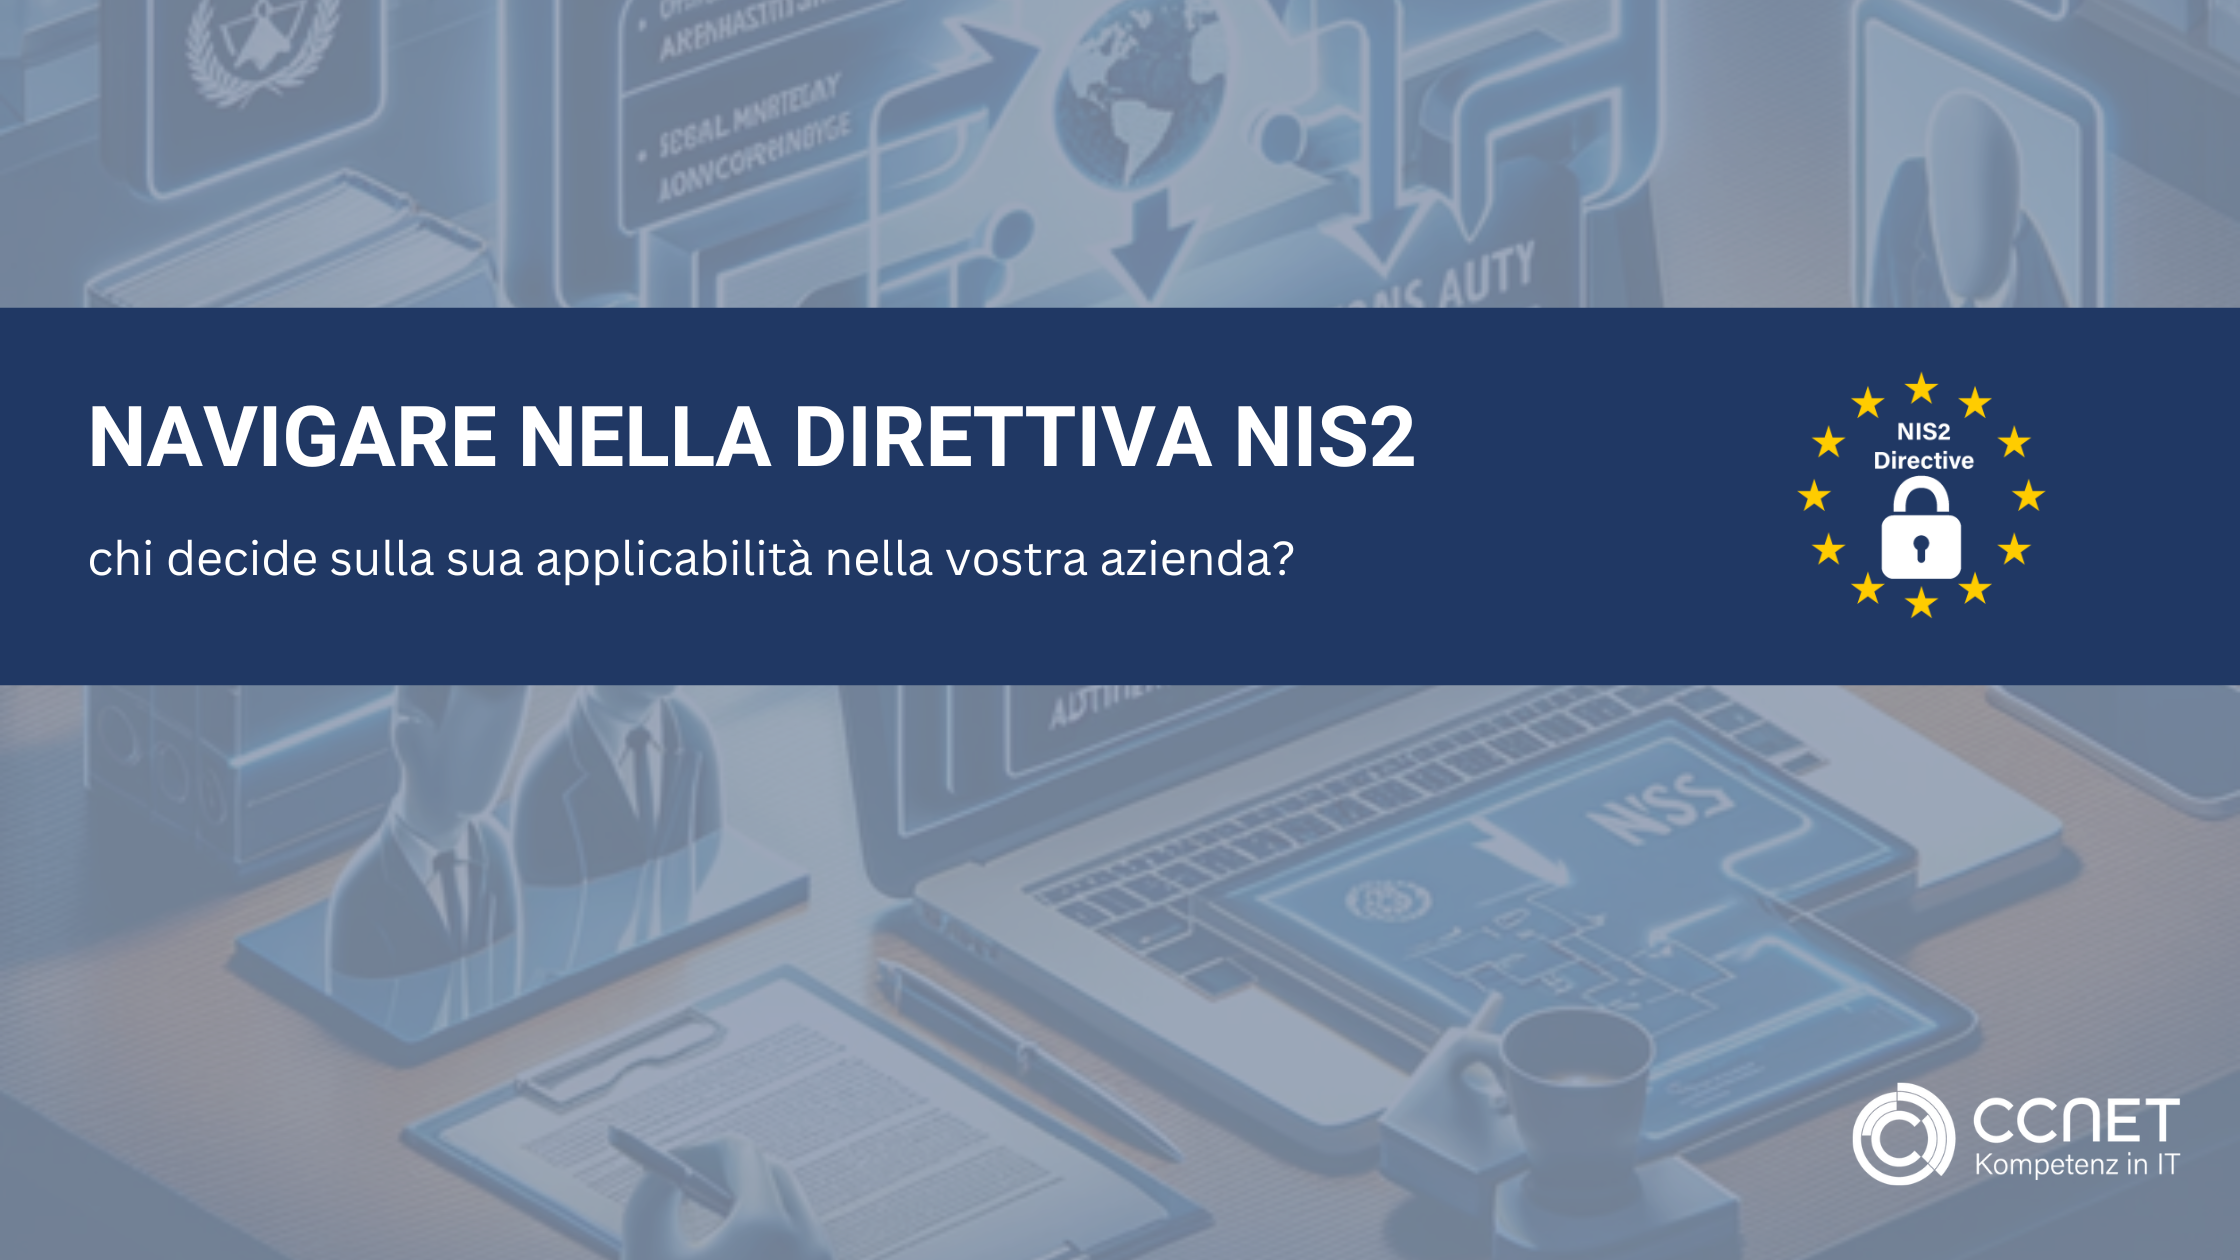 Navigare nella direttiva NIS2: chi decide sulla sua applicabilità nella vostra azienda?